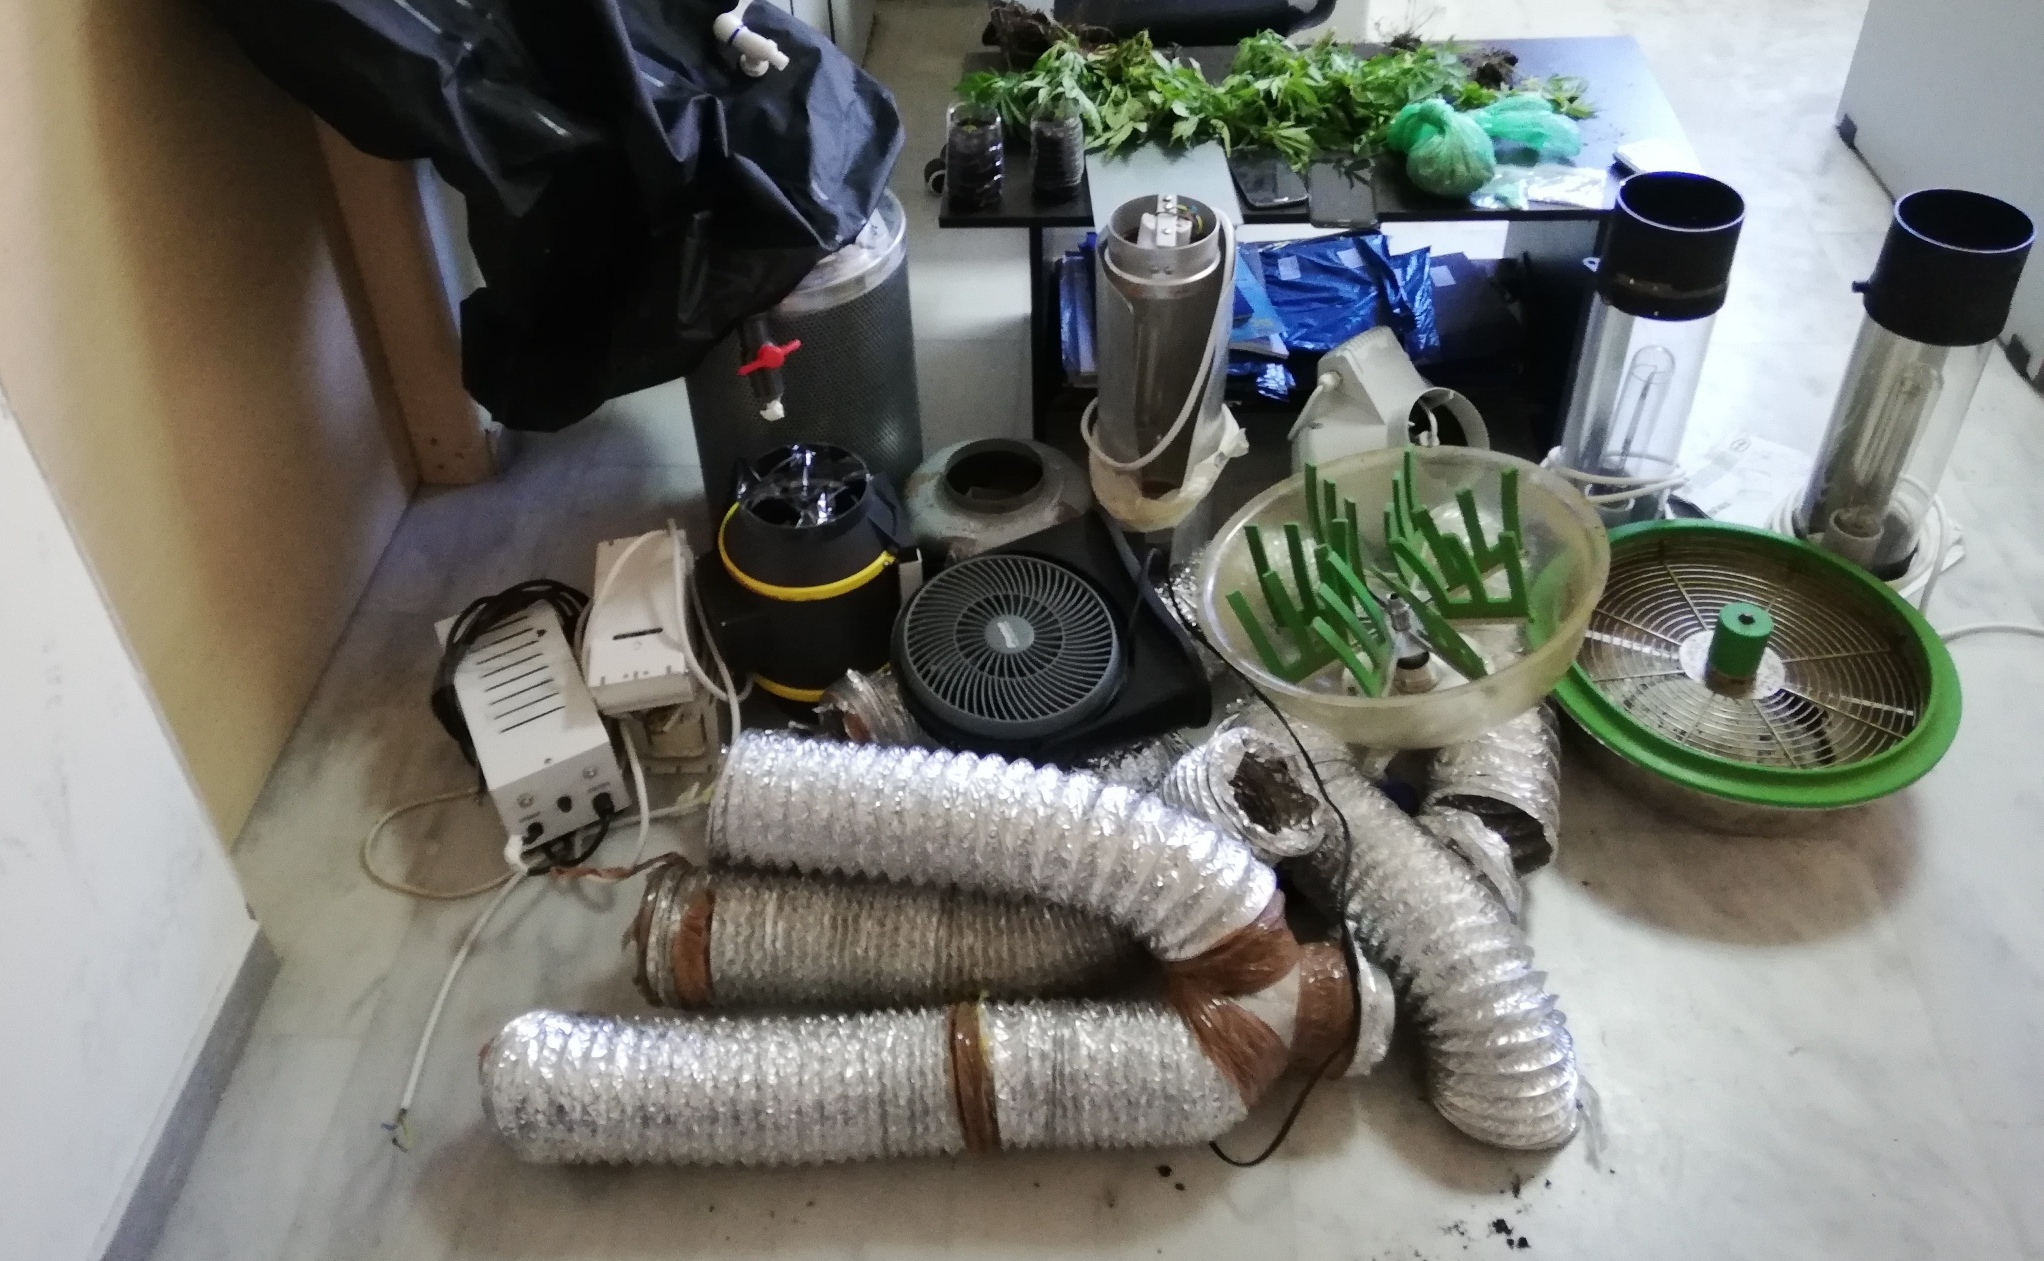 “Σπιτική” κάνναβη υδροπονικής καλλιέργειας και κοκαΐνη σε σπίτι του δήμου Πλατανιά (φωτο)